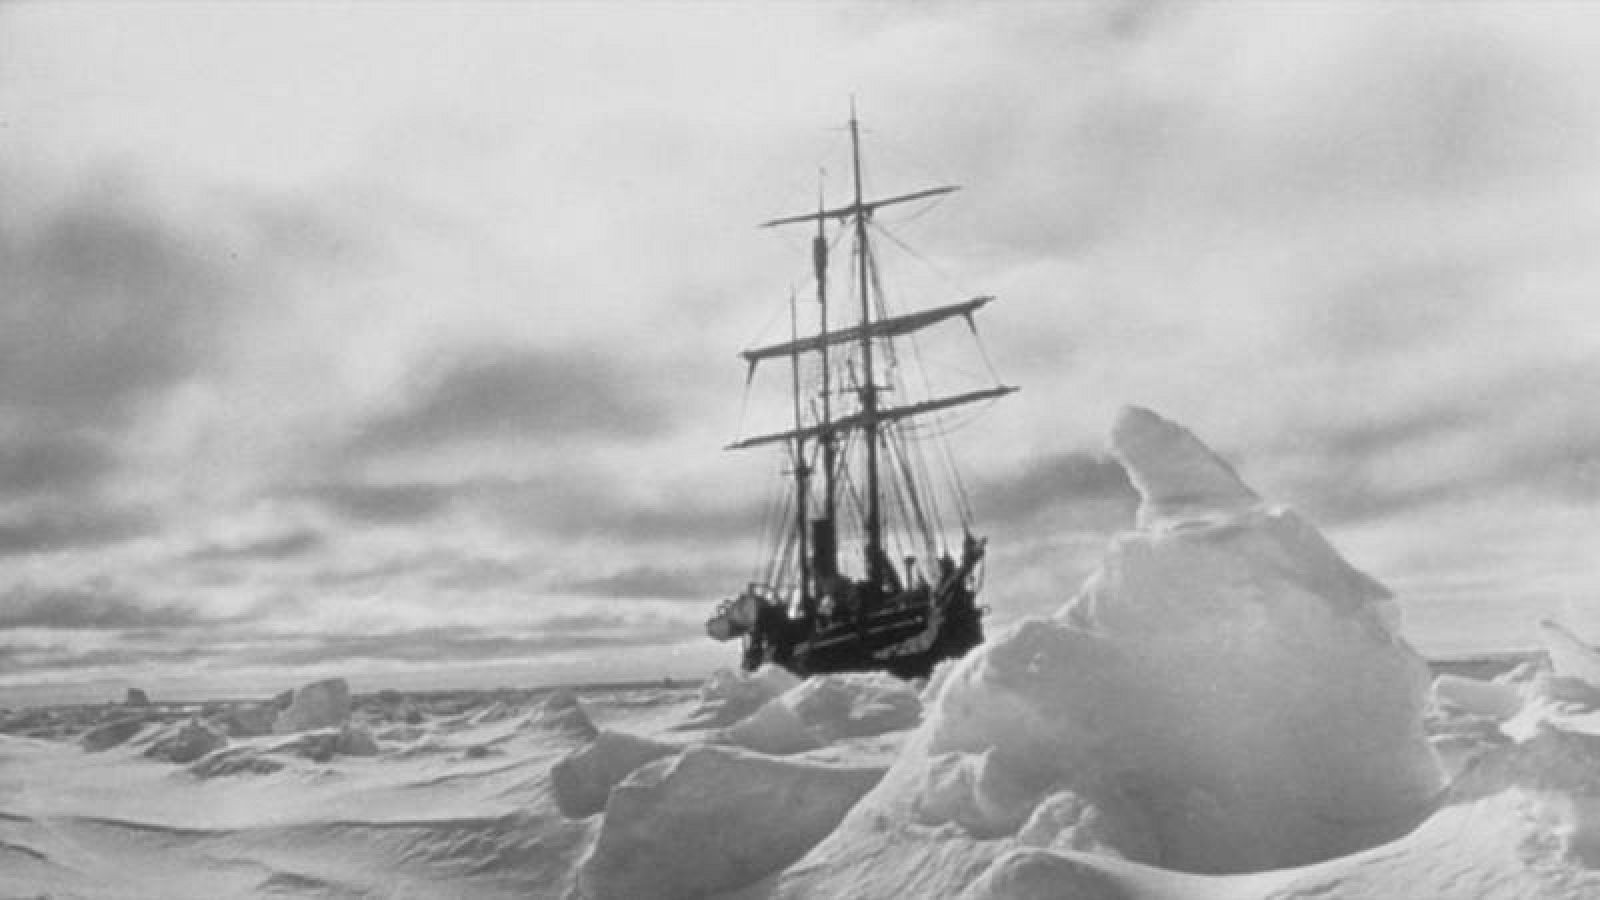 Imagen del Endurance atrapado en el hielo.